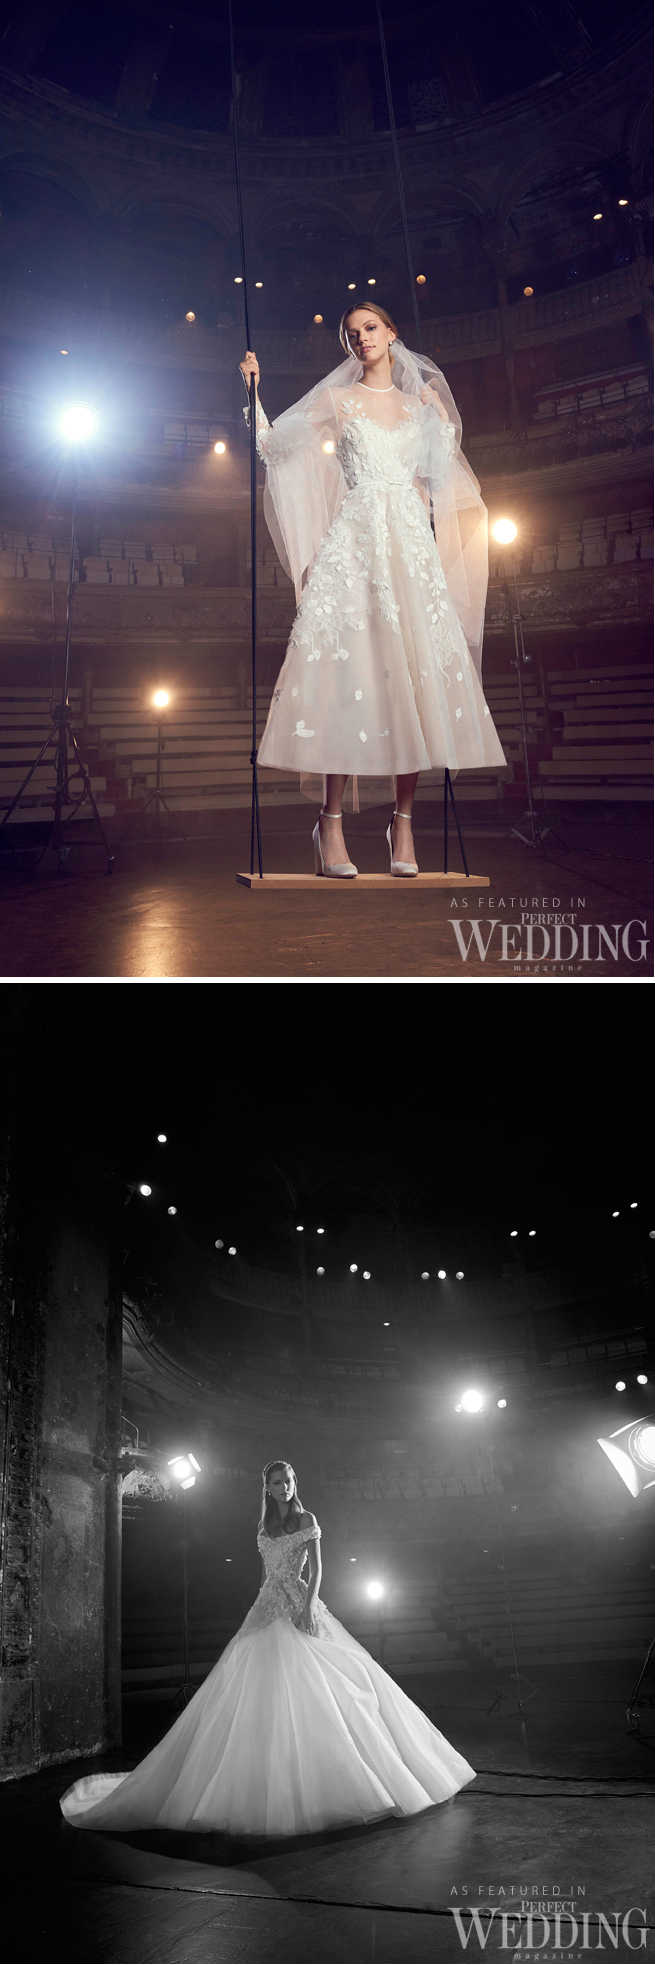 Elie Saab, Elie Saab Bridal, Elie Saab Wedding Gowns, Elie Saab Bridal Fall Winter 2018, Perfect Wedding Magazine, Theater of Light, Bridal Trends 2018, Perfect Wedding Magazine, Couture Bride